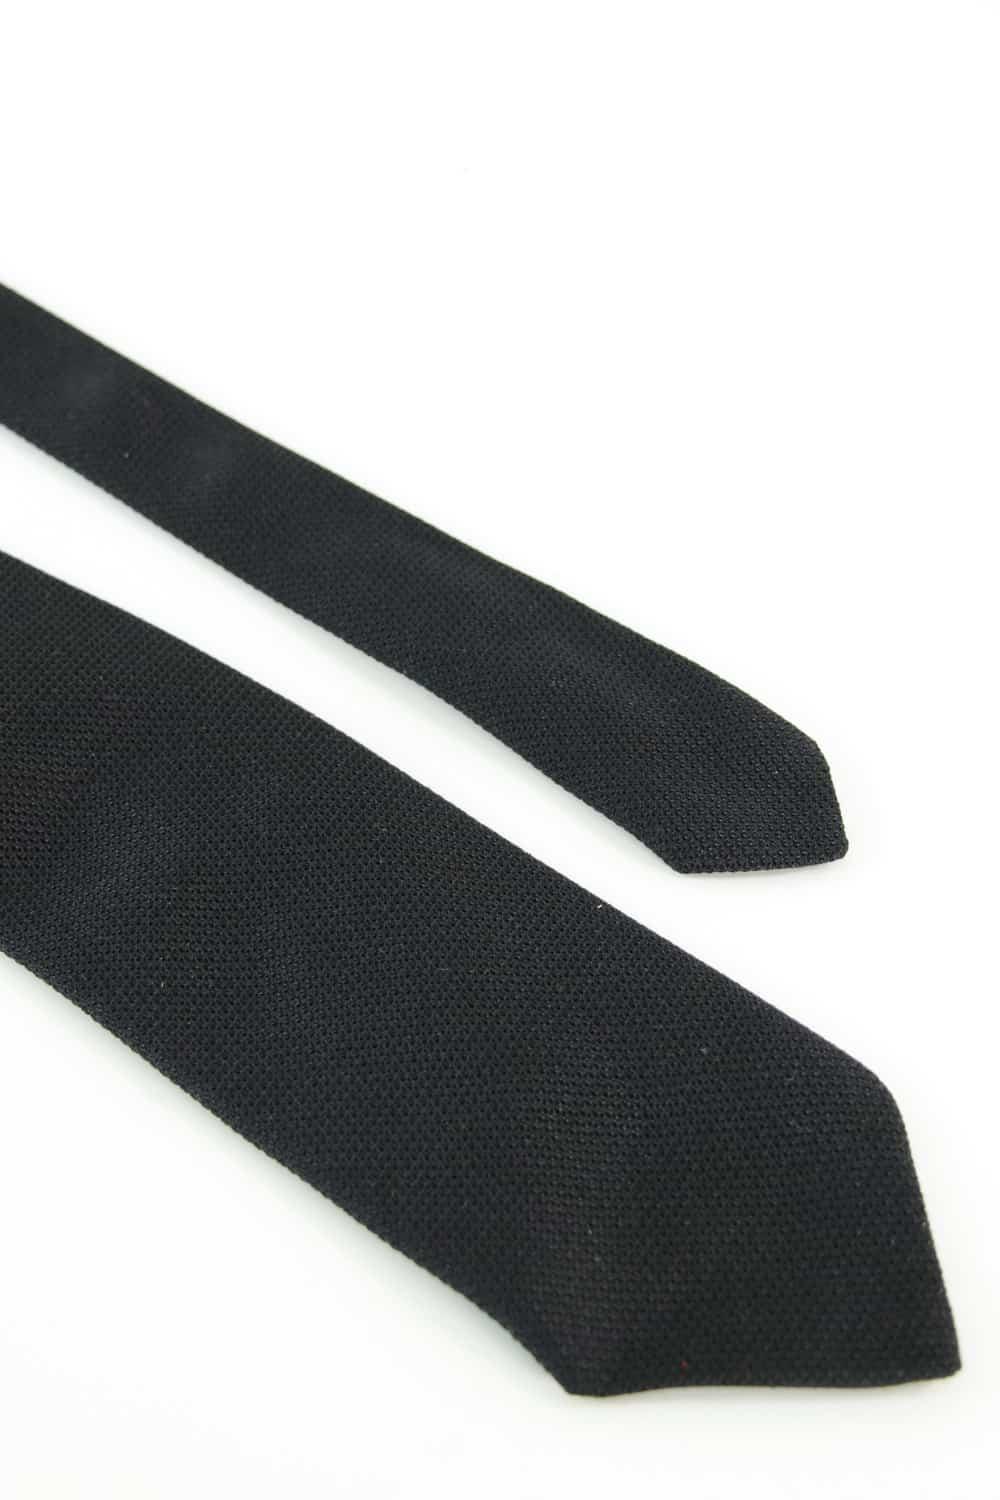 Cravates en soie